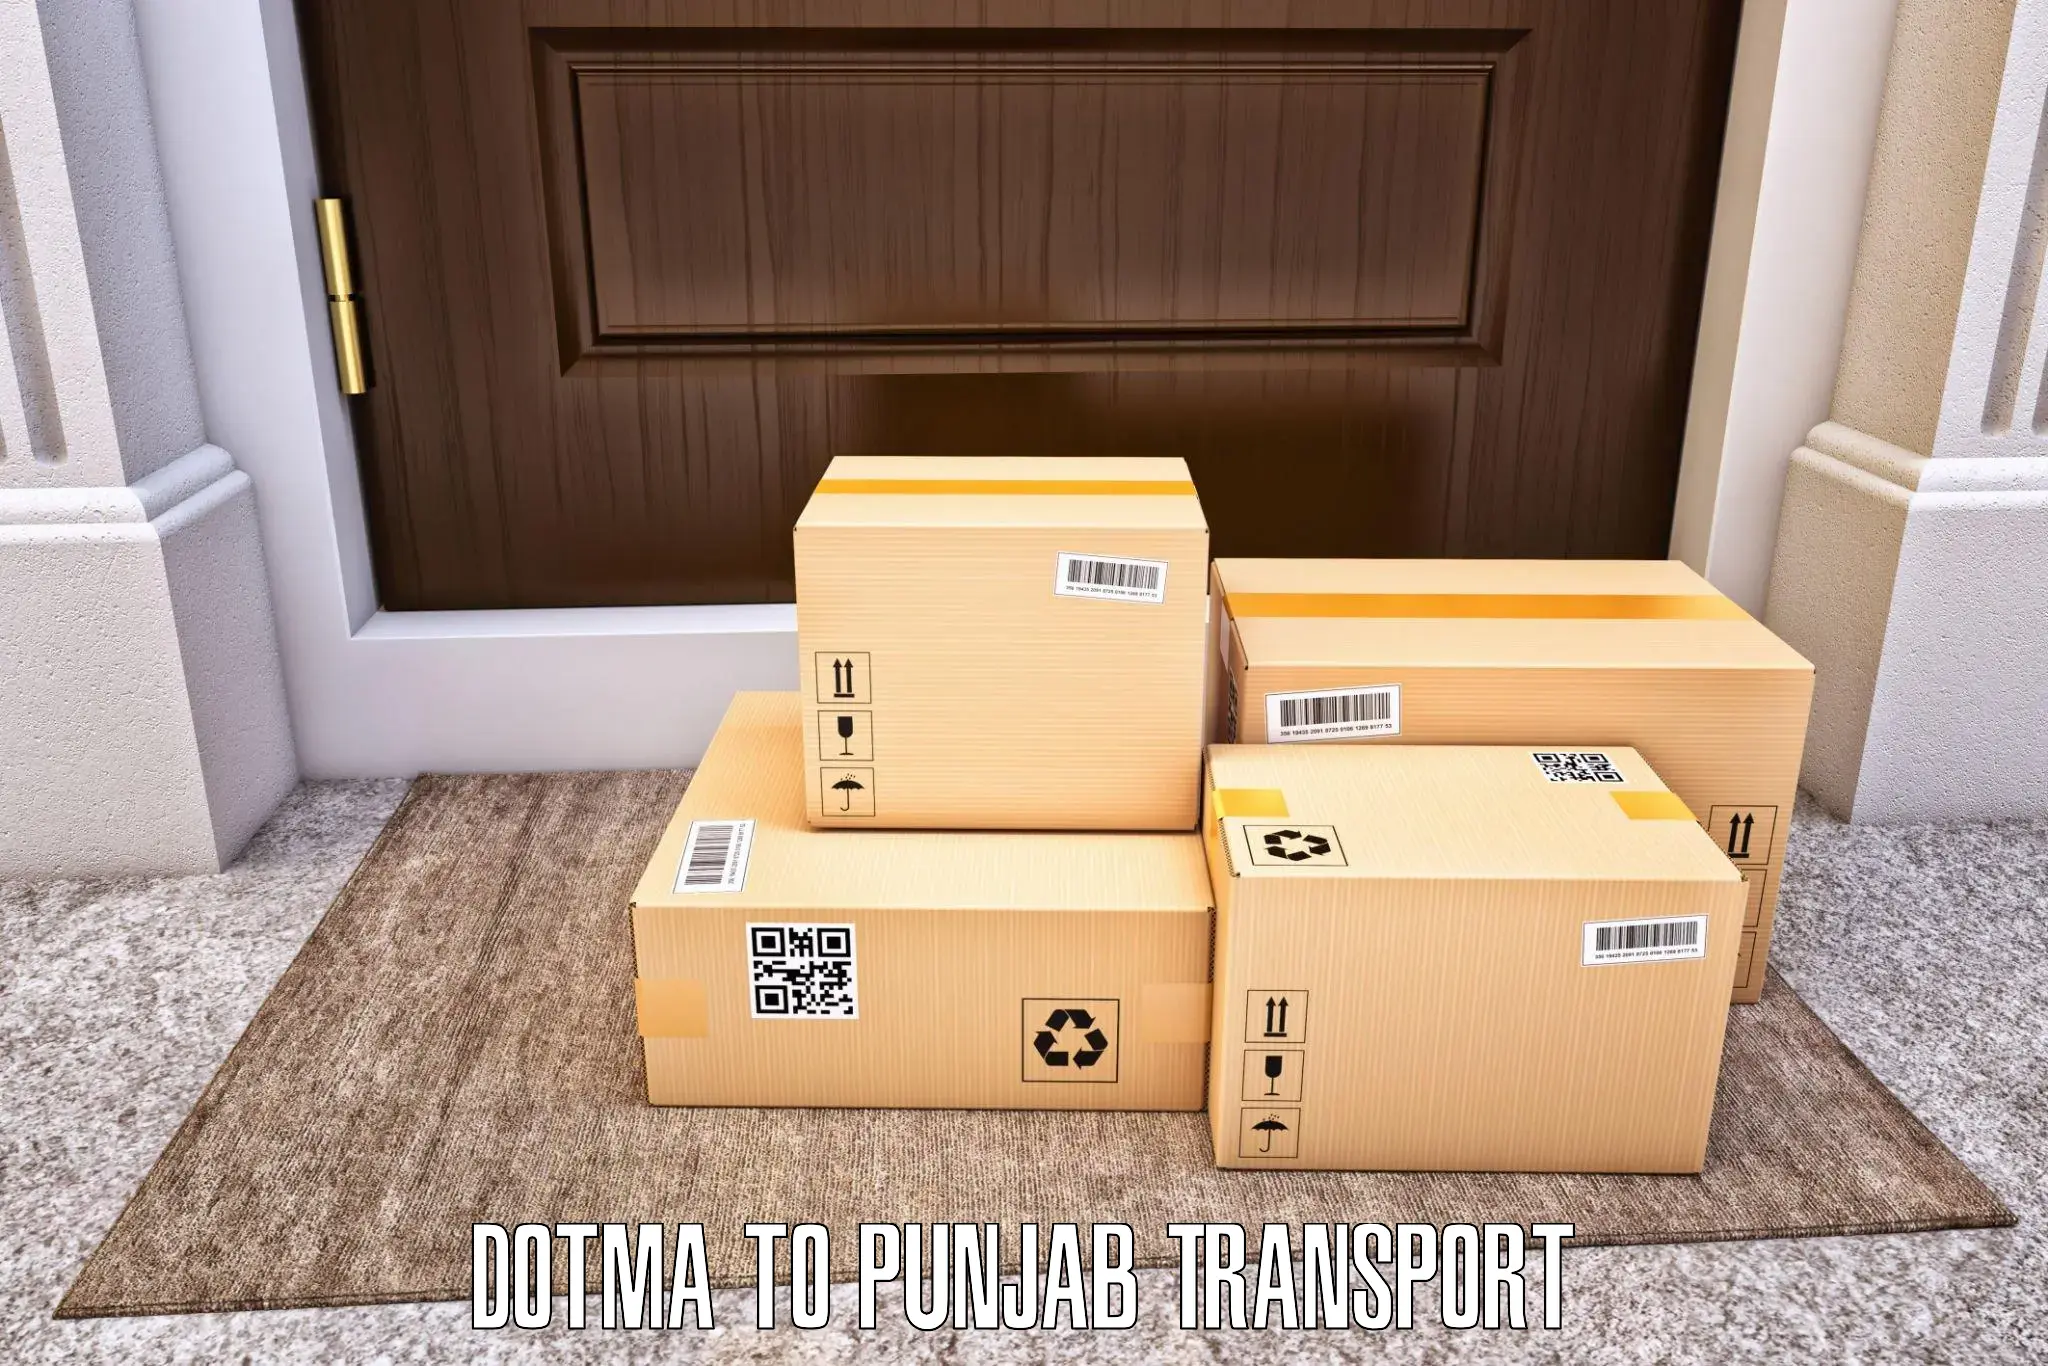 Lorry transport service Dotma to Nakodar